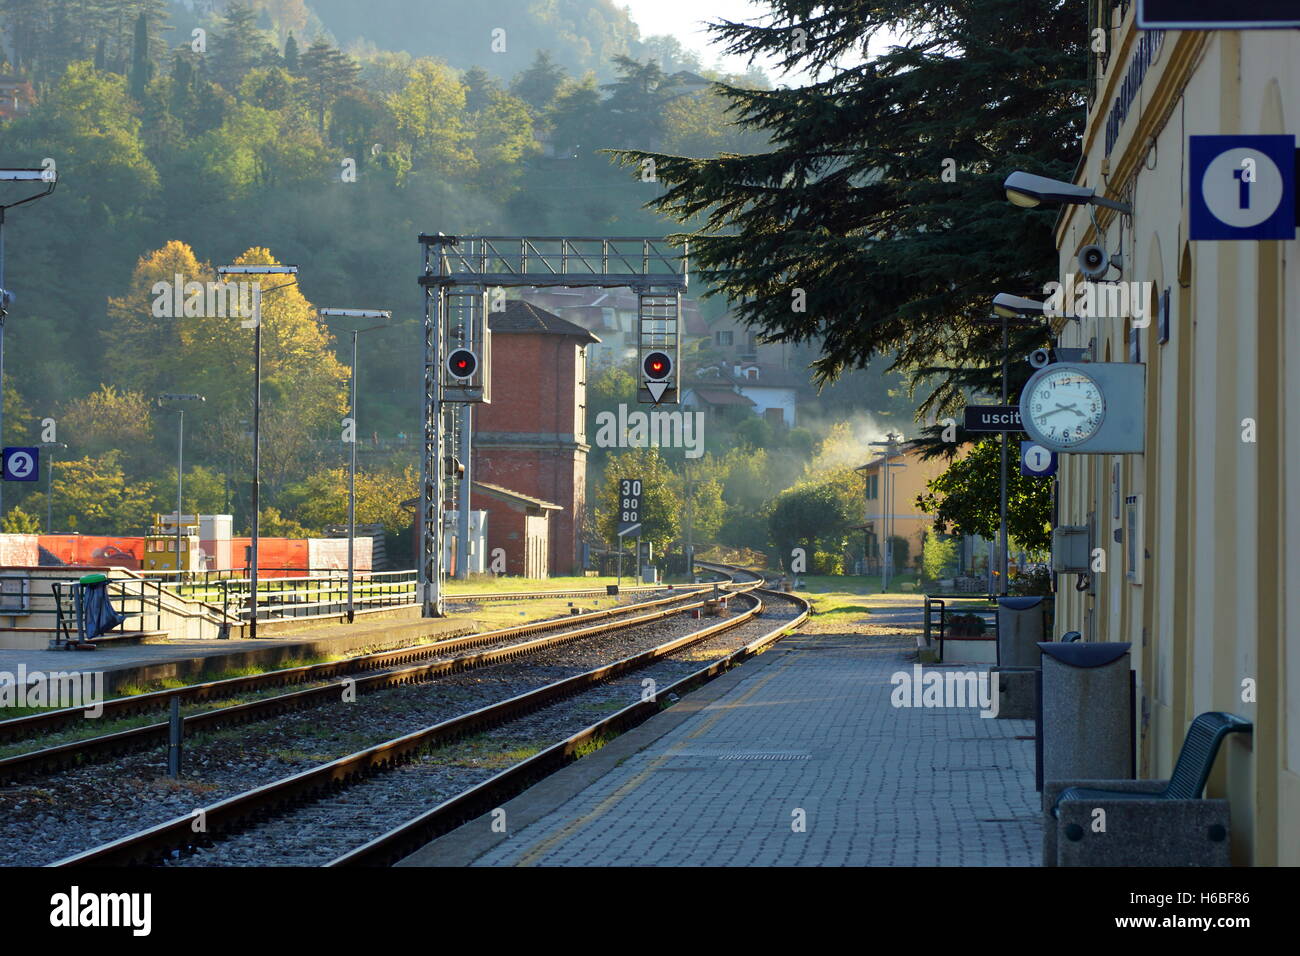 Railway Station in Marradi. Marradi, Province of Florence, Italian, region Tuscany Stock Photo